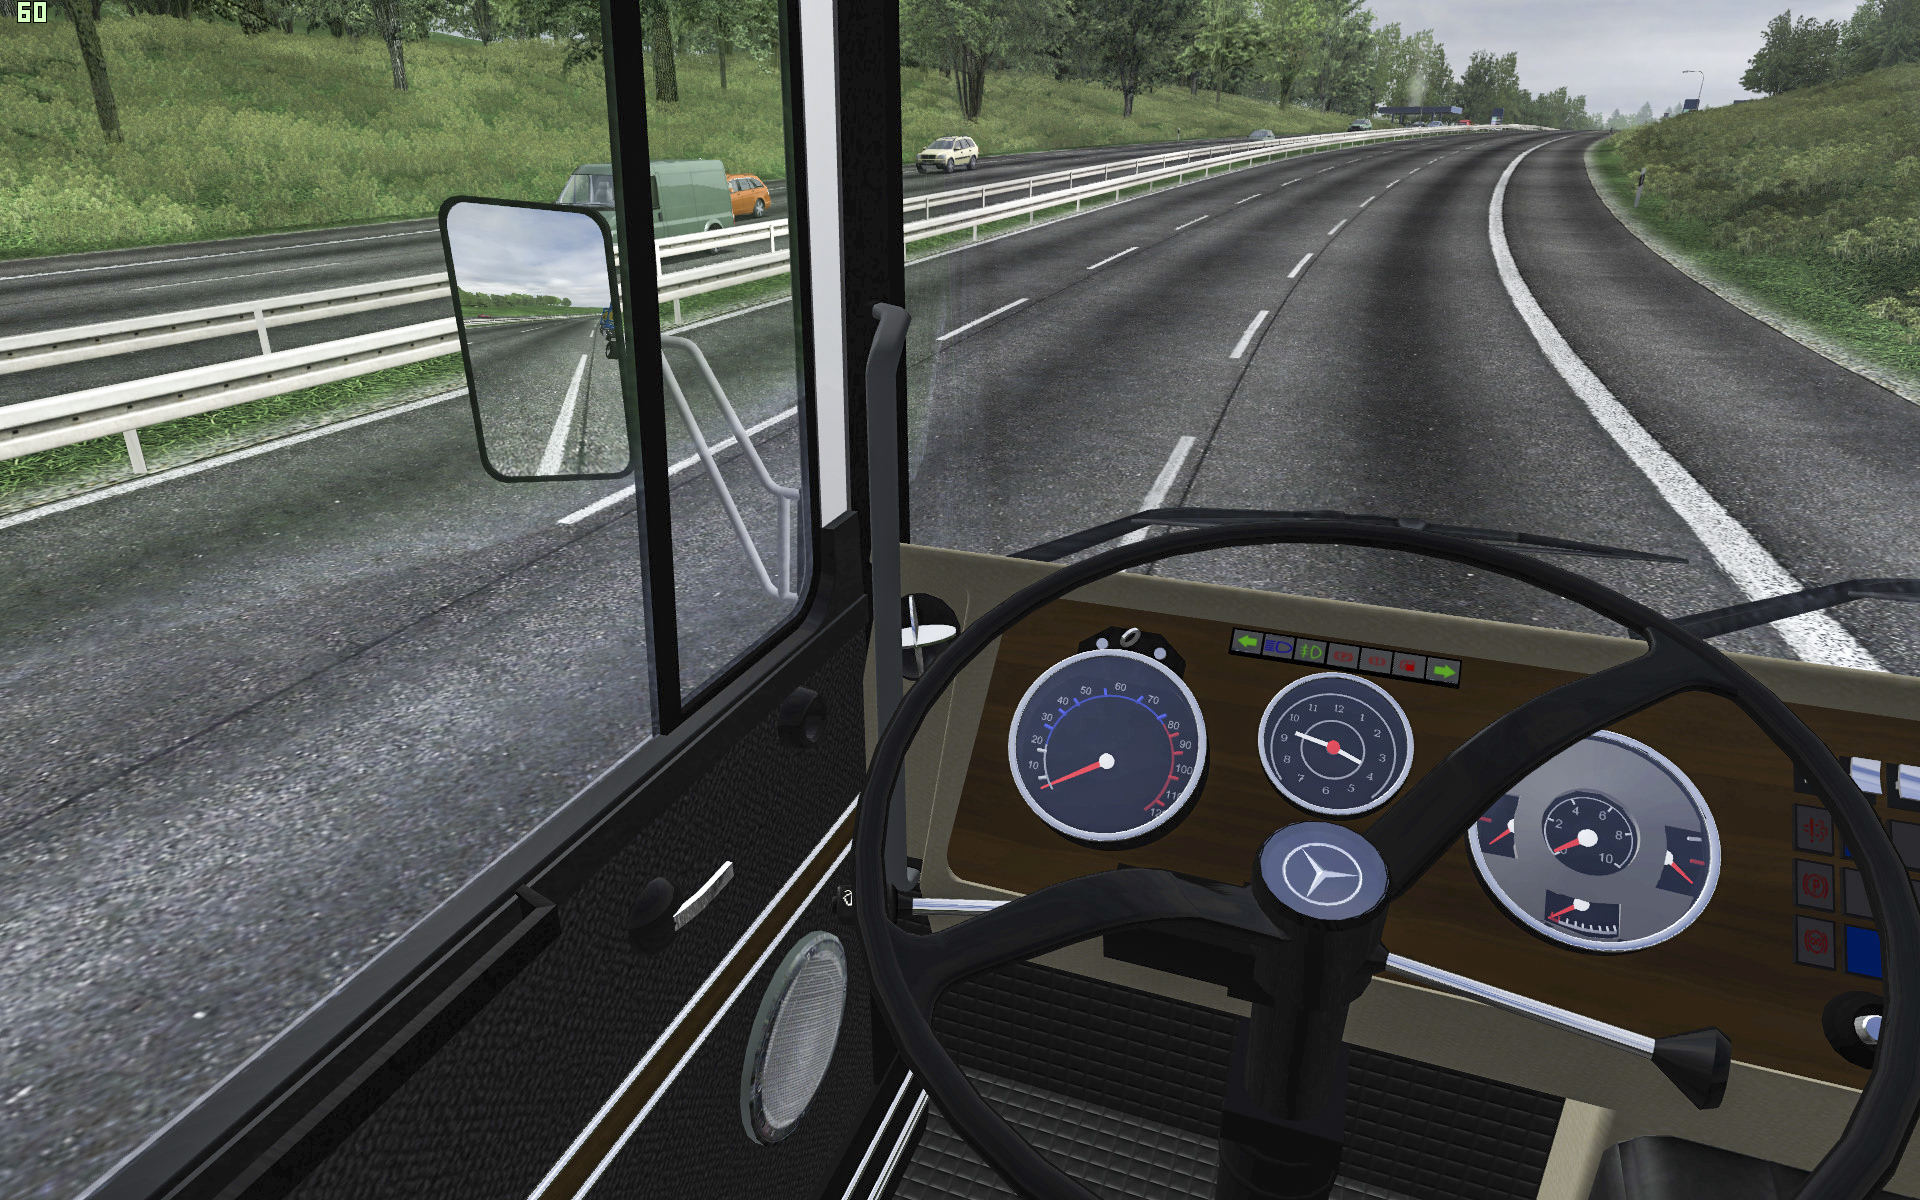 Симулятор 3 все открыто. Моды етс 2 1.34Mercedes-Benz lps1632. German Truck Simulator моды Сибирь. Трёхосный симулятор движения.